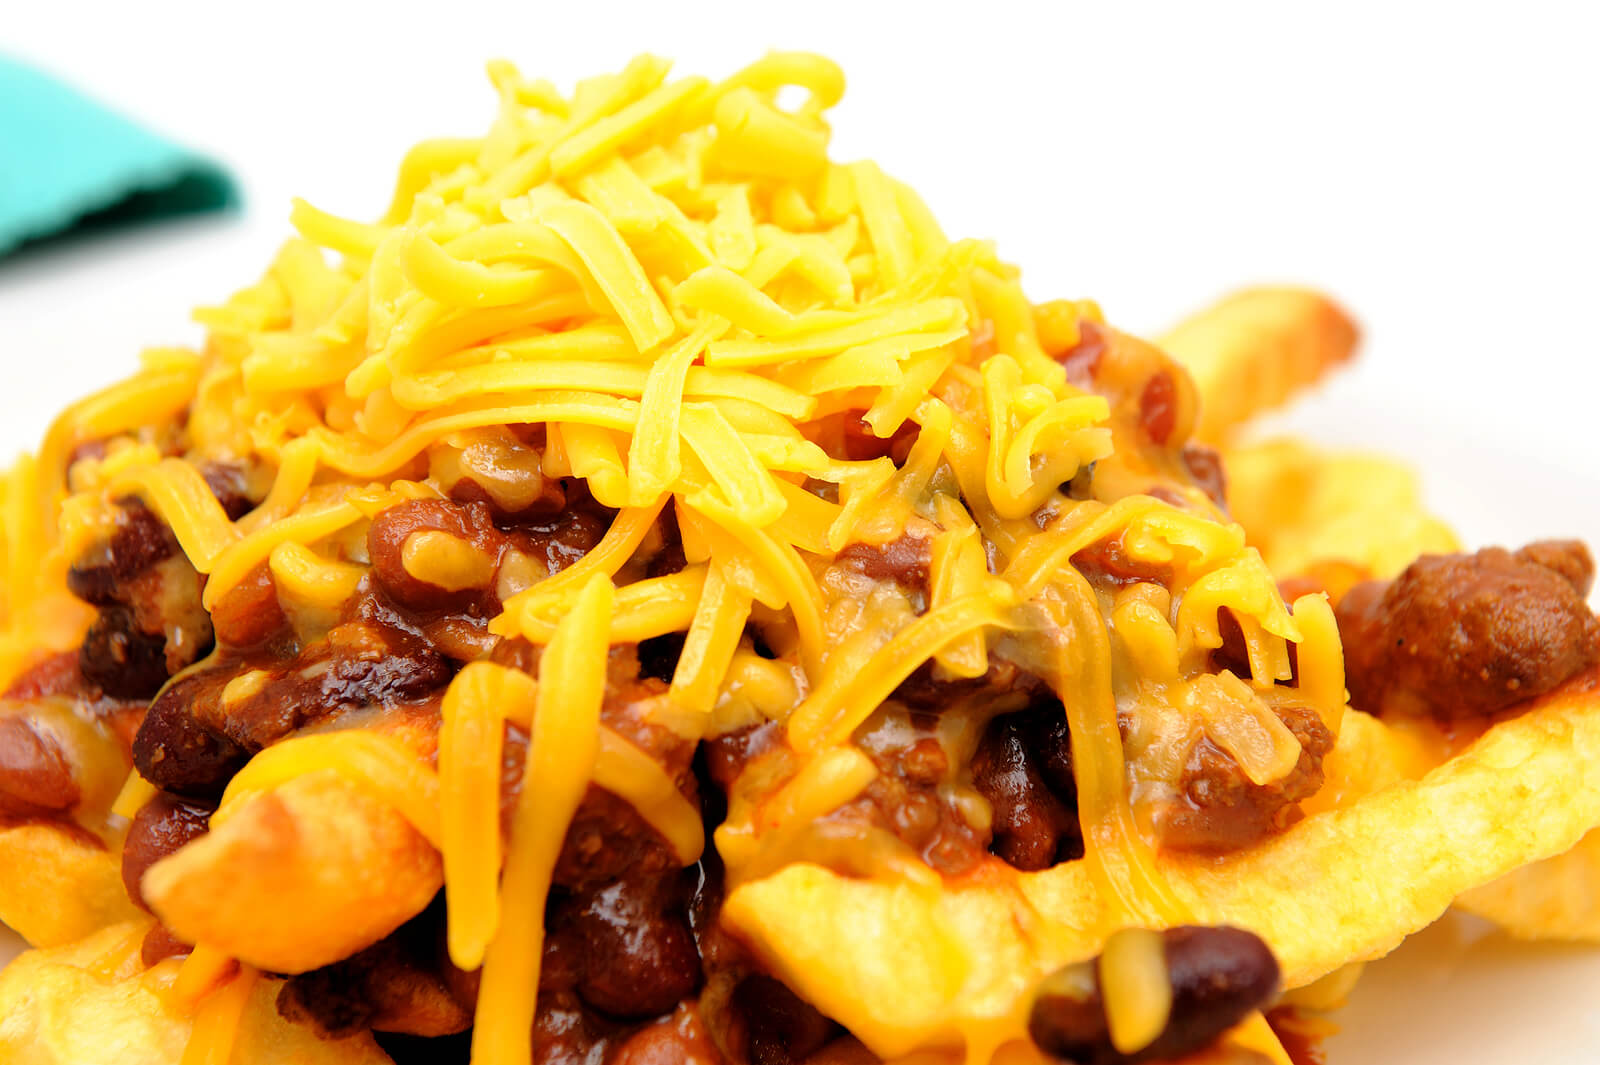 Entre os alimentos que aumentam o colesterol estão as batatas fritas